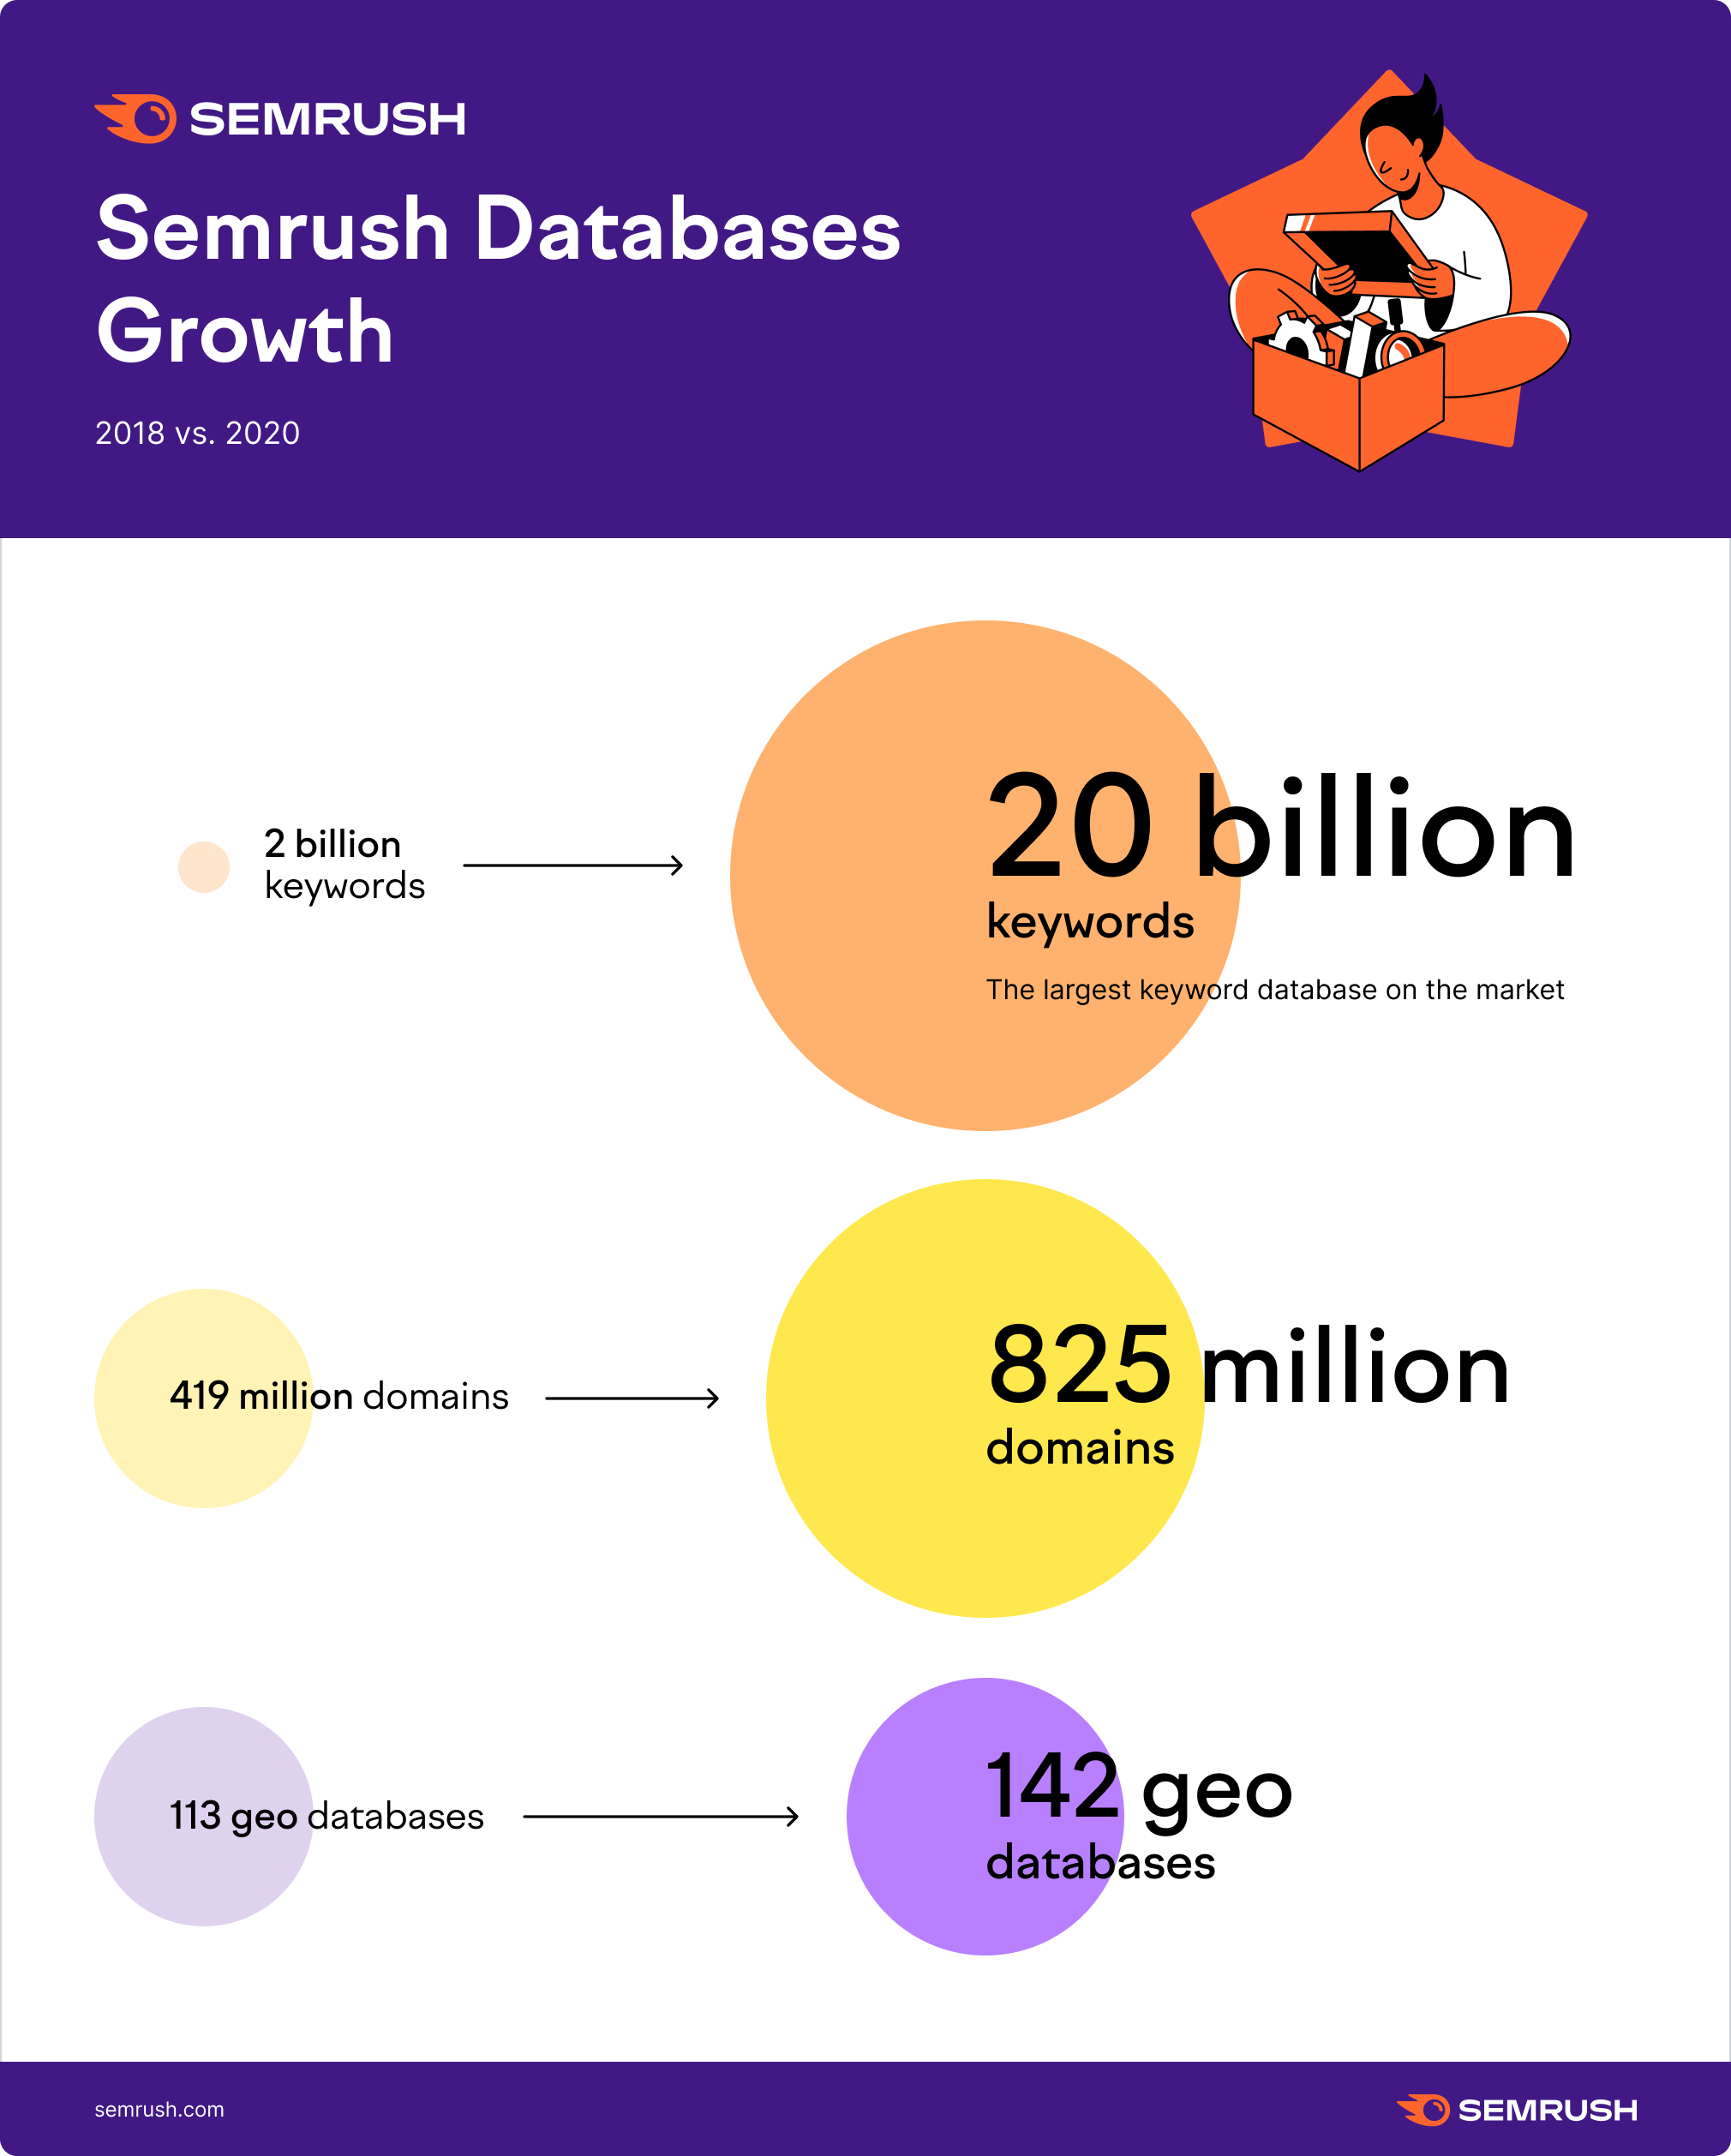 Semrush databases growth